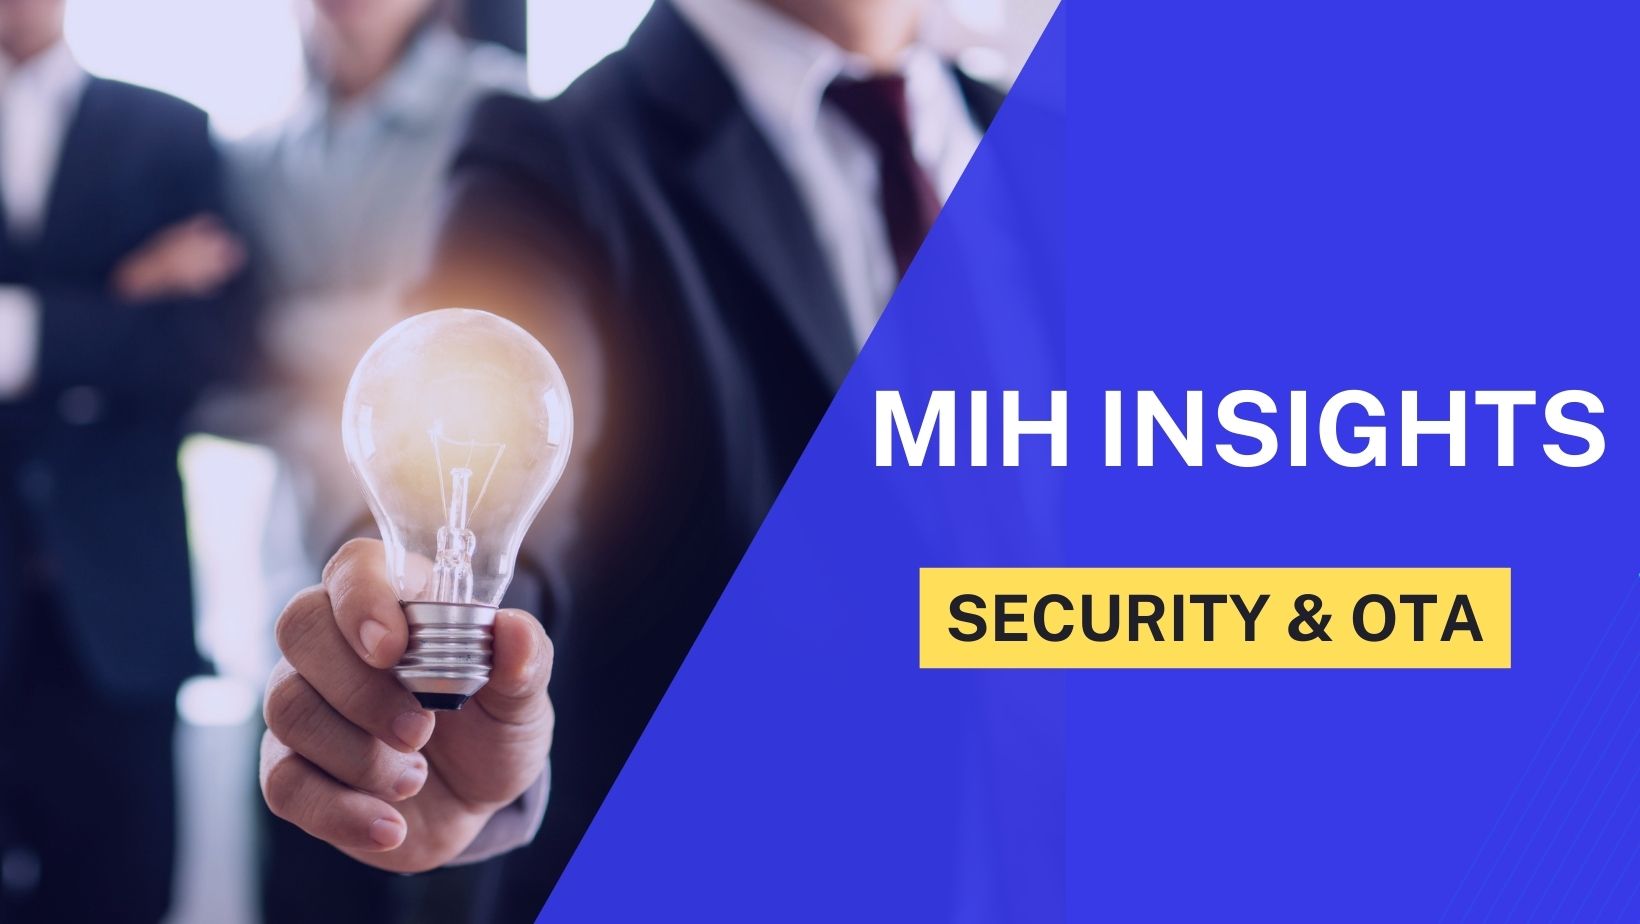 [MIH Insights] 當車成為移動資料中心，從供應商到用戶資料管理全面拉起安全防線